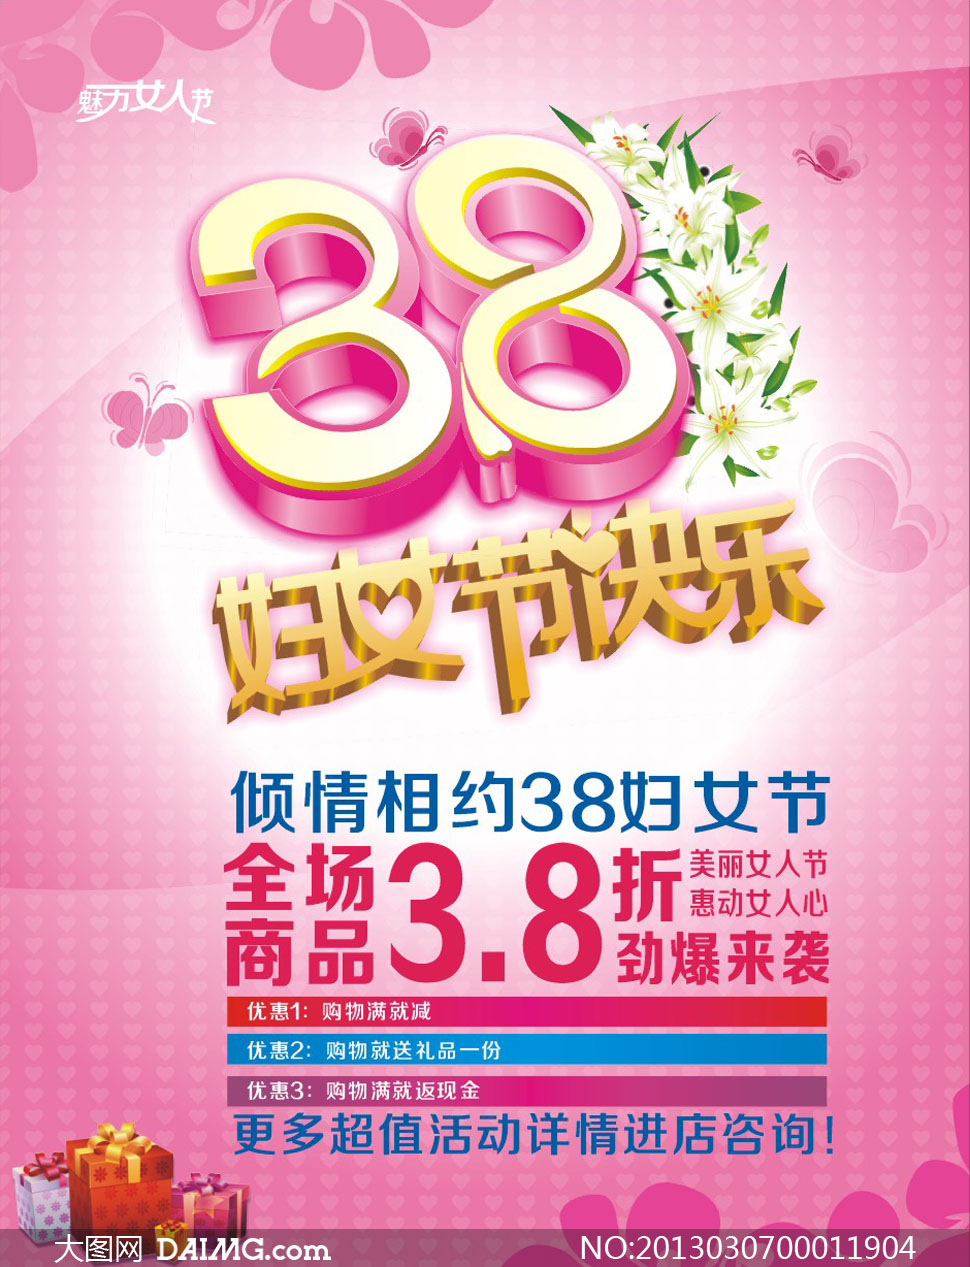 38妇女节快乐促销广告矢量素材